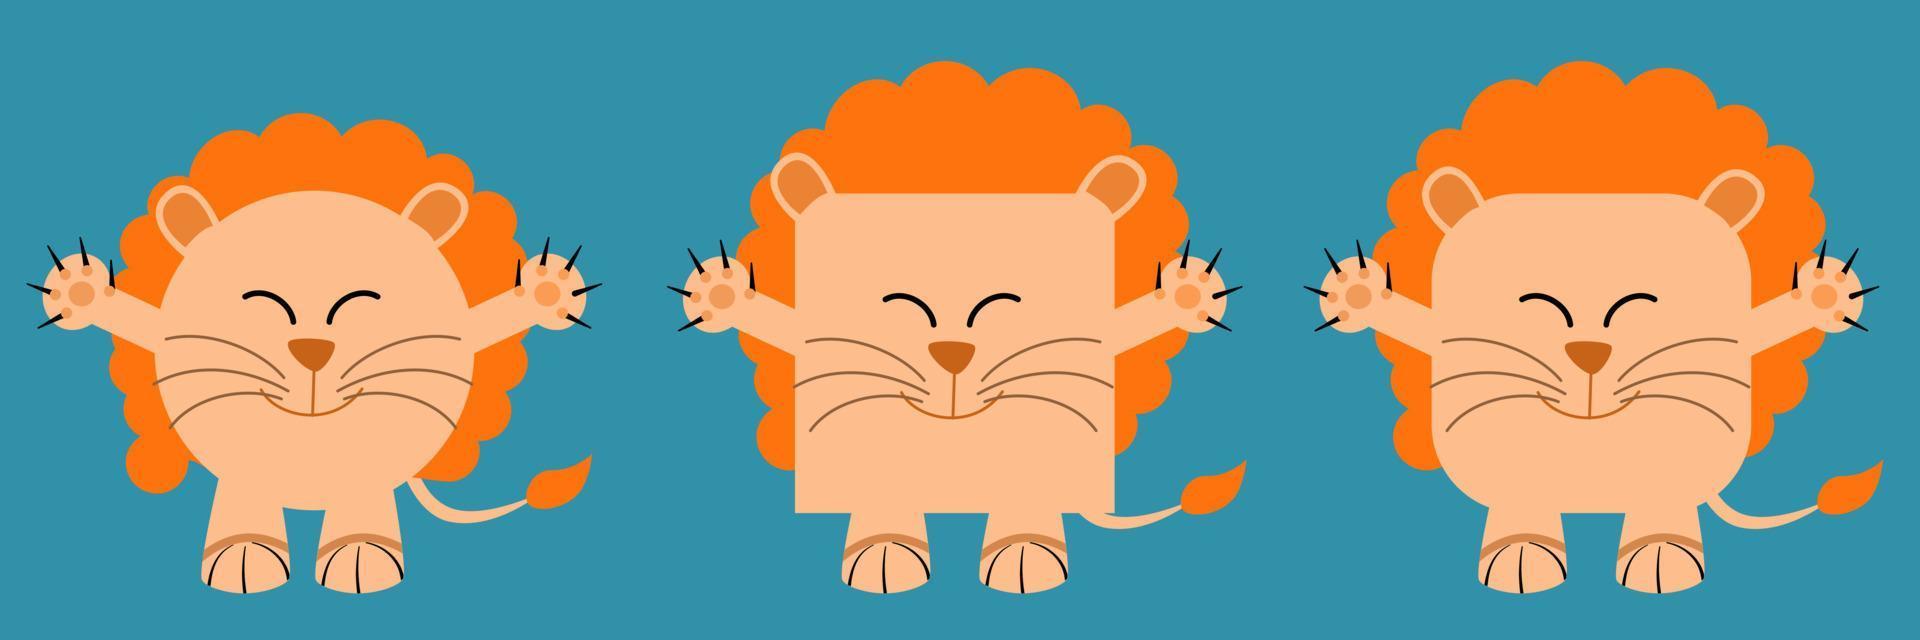 un ensemble d'animaux de forme carrée et ronde. illustration vectorielle d'un lion vecteur